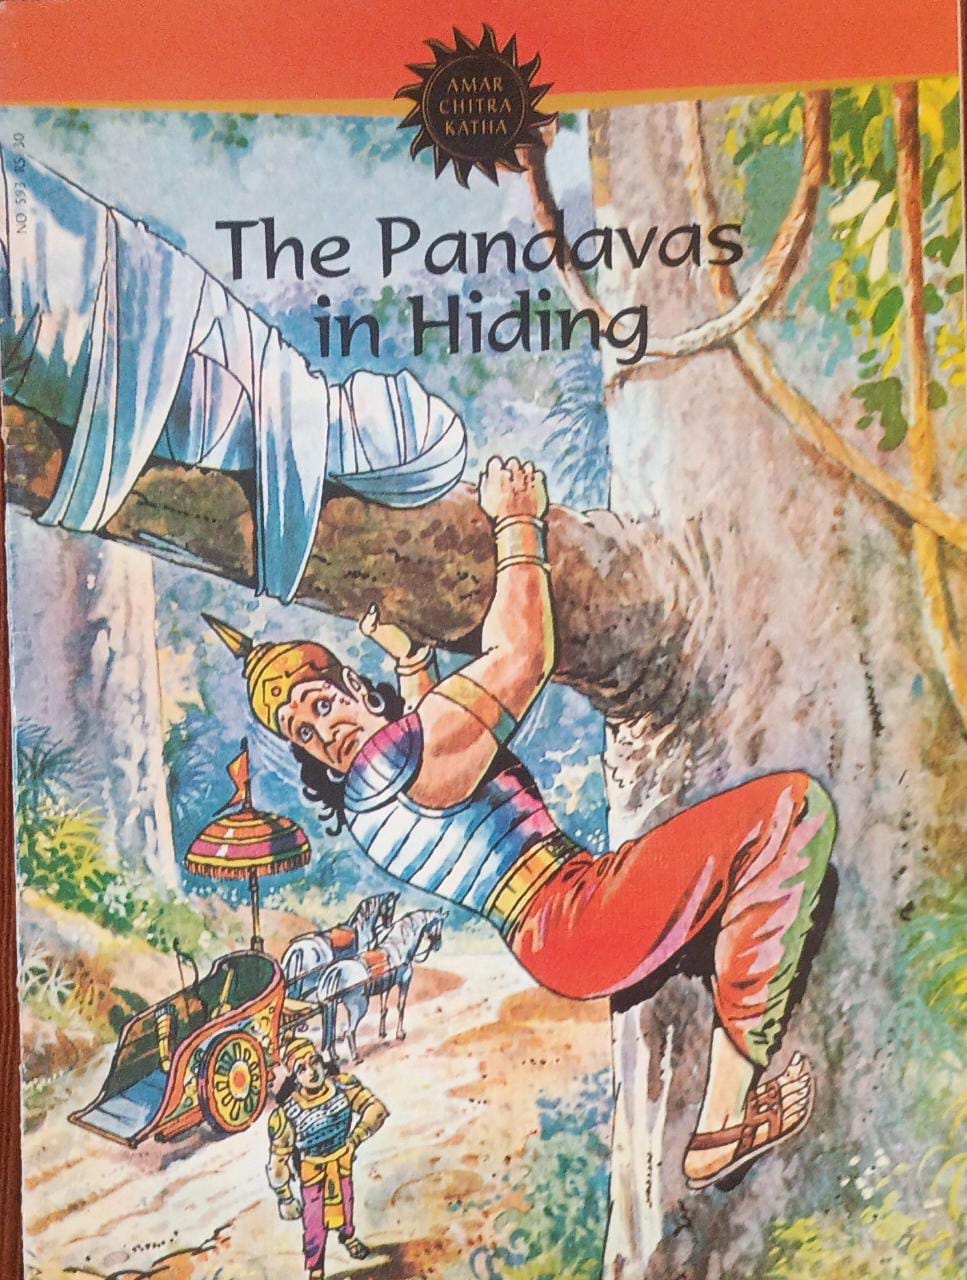 Amar Chitra Katha; The Pandavas In Hiding